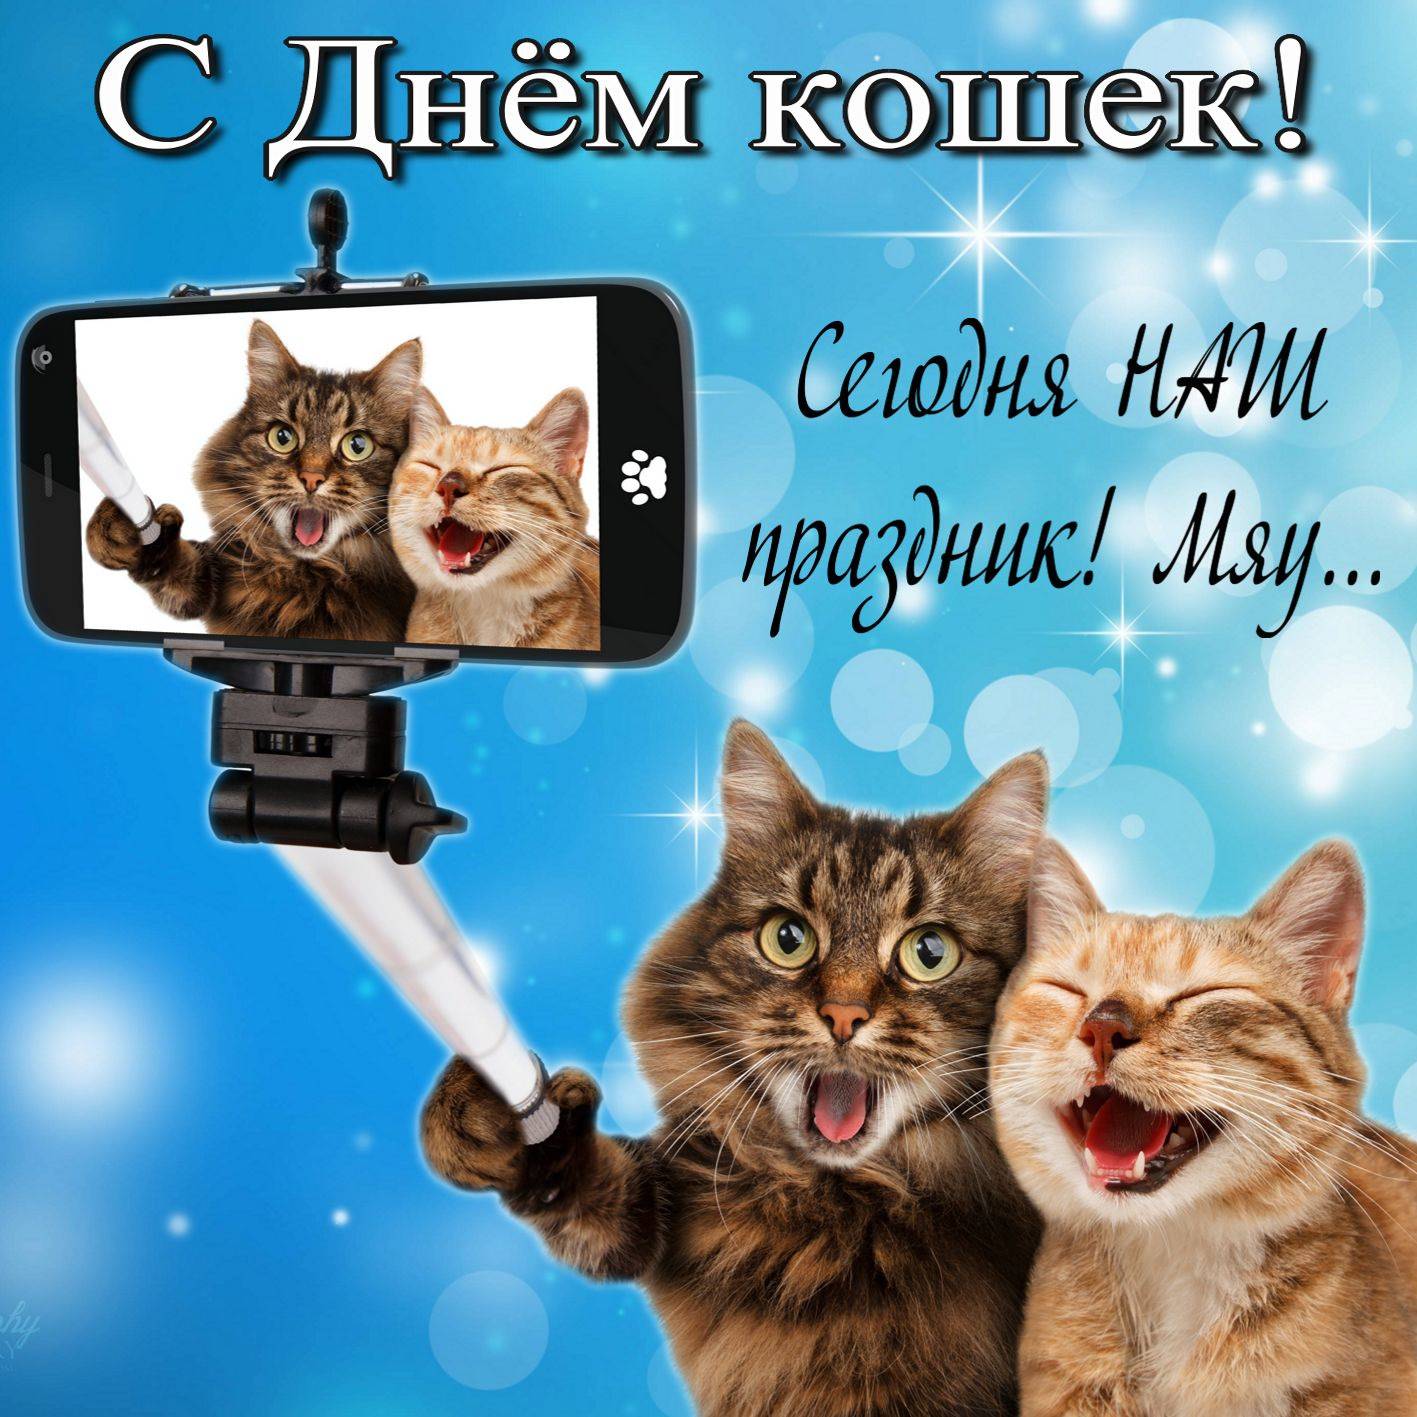 Всемирный день кошек 2021: когда празднуют в россии и мире - 1 марта? история, традиции